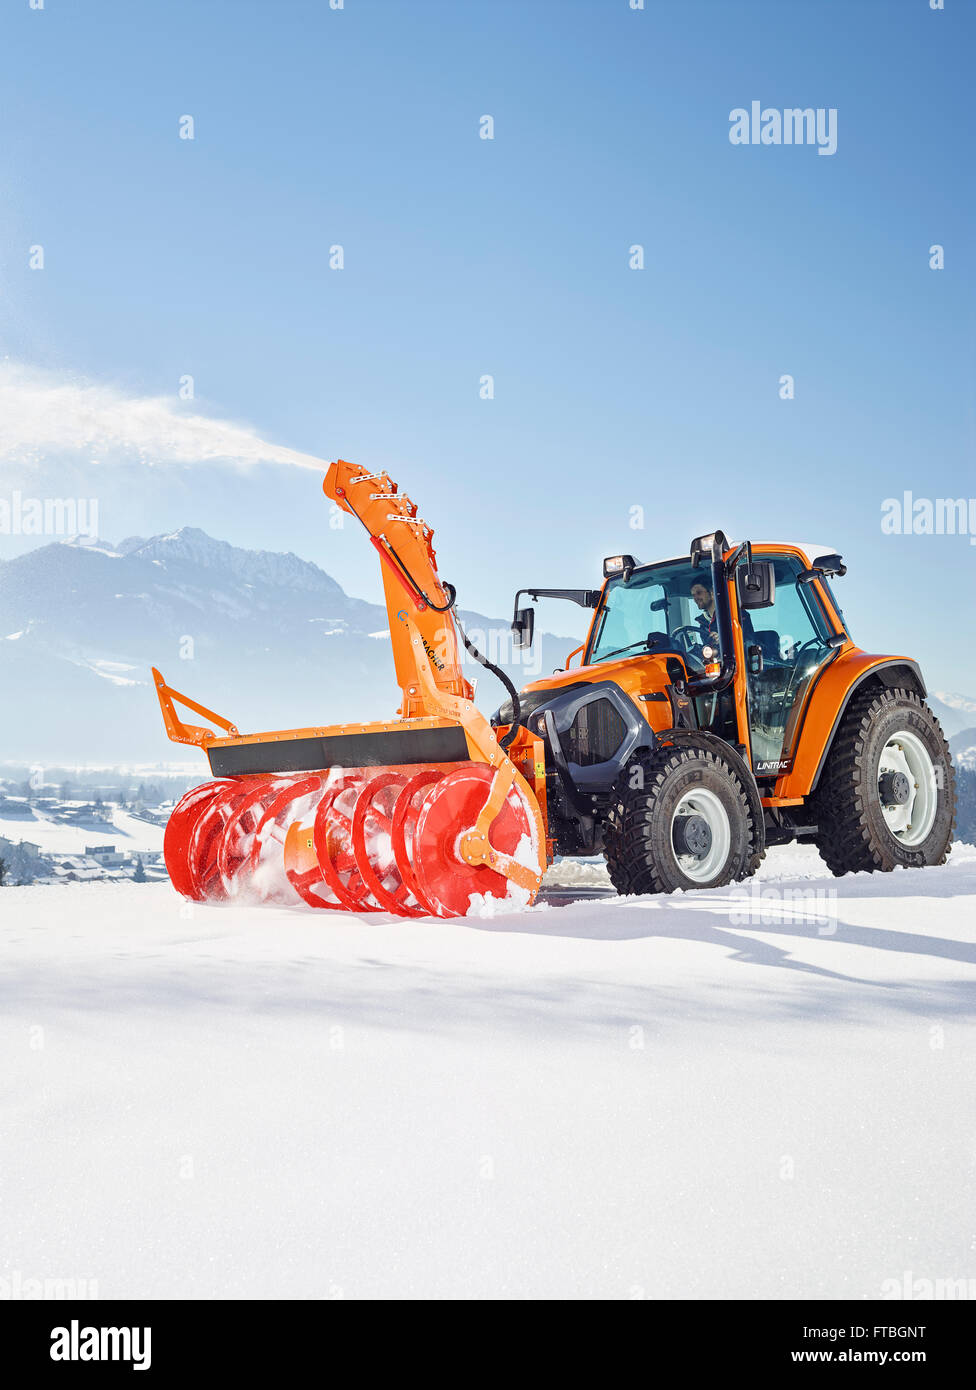 Tracteur avec une souffleuse à neige, de la neige, des services d'hiver  Kundl, vallée de l'Inn, district de Kufstein, Tyrol, Autriche Photo Stock -  Alamy